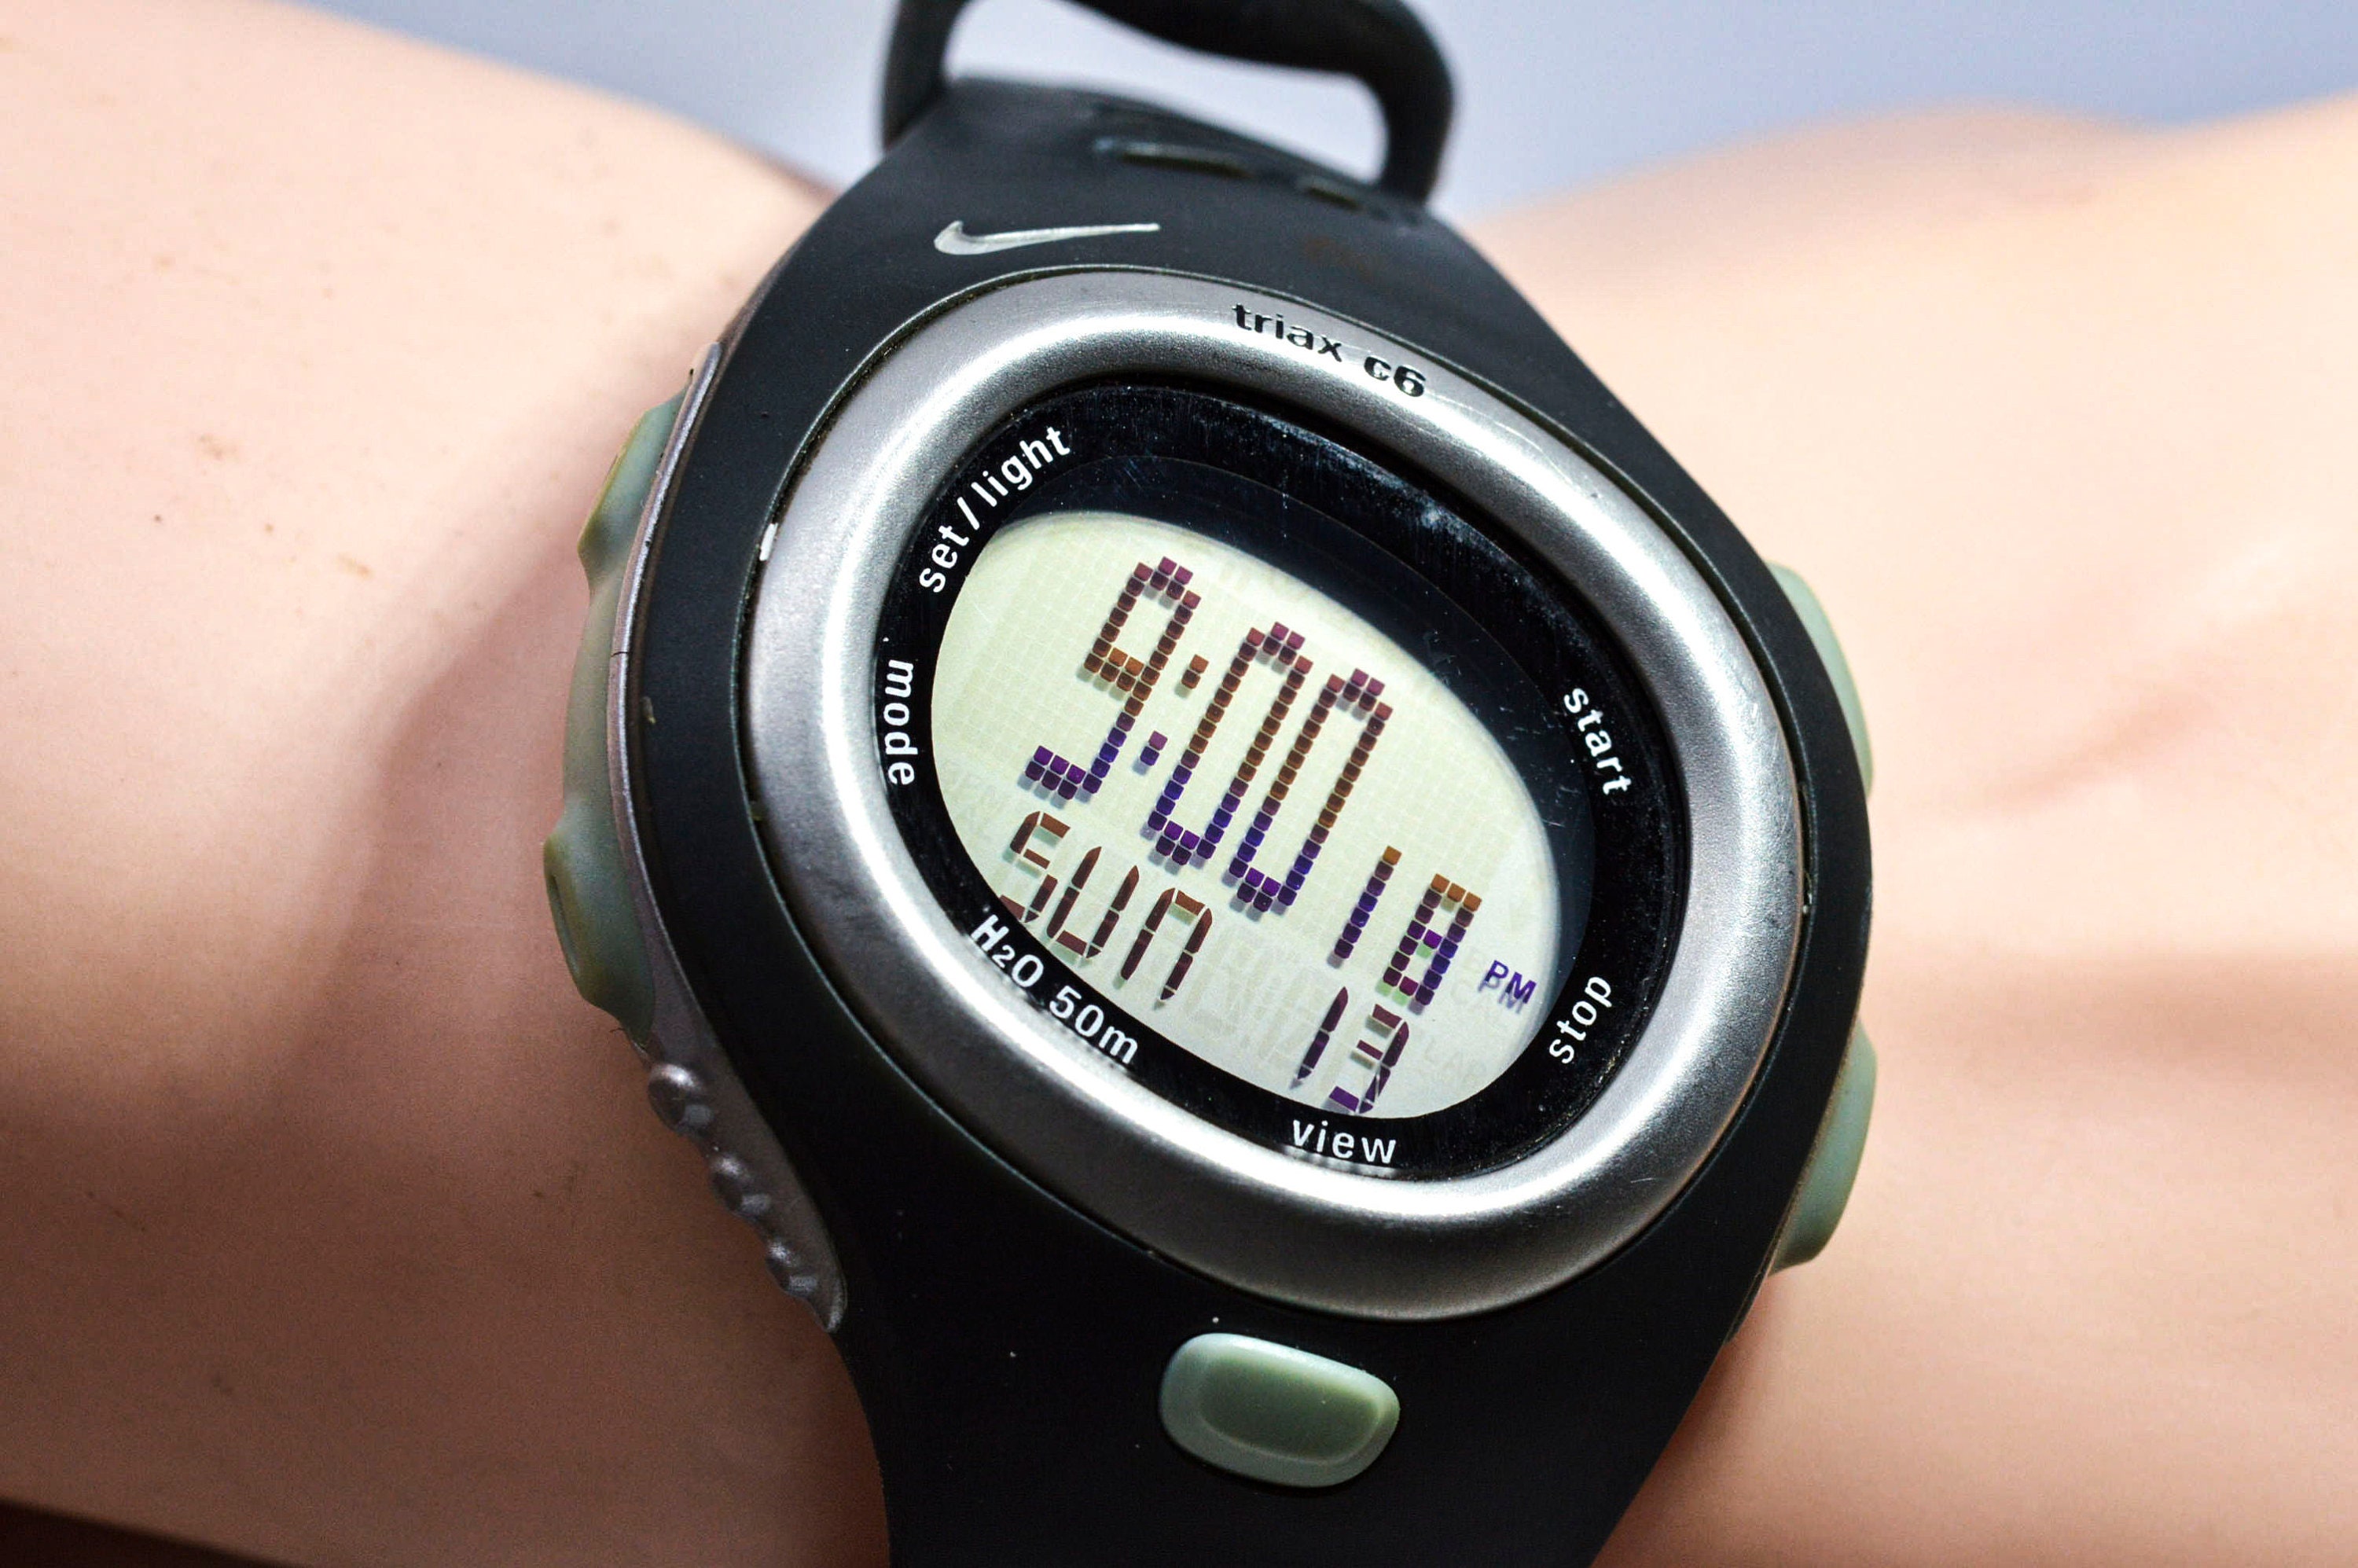 Nike Triax C6sm0014 Black Tone Digital Sports Wrist Watch - Etsy Israel